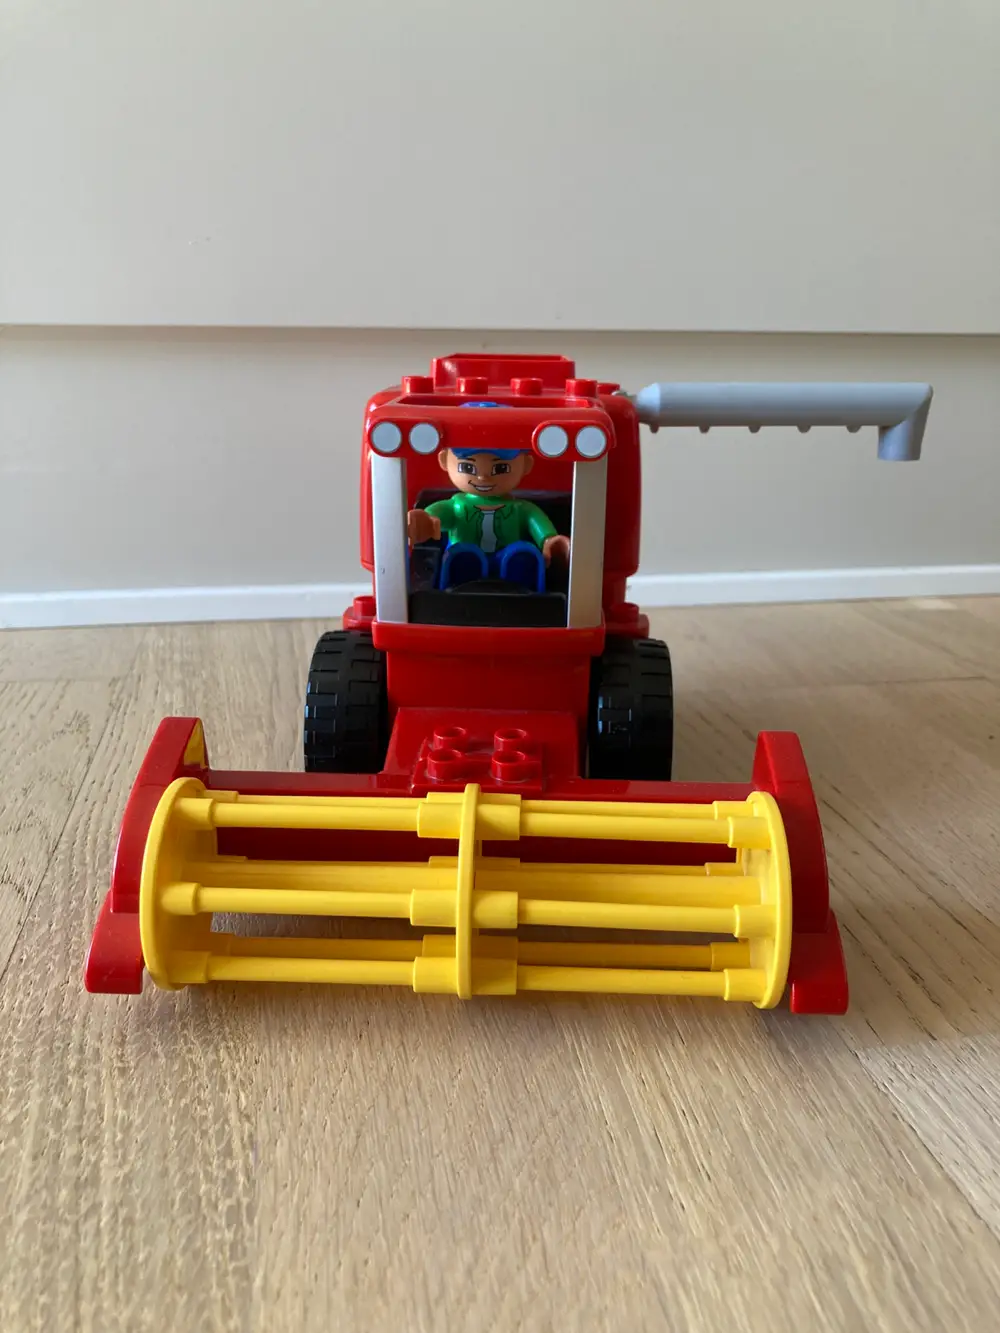 Køb LEGO mejetærsker / harvester af Mette Kundal på Reshopper · Shop secondhand til børn, mor og